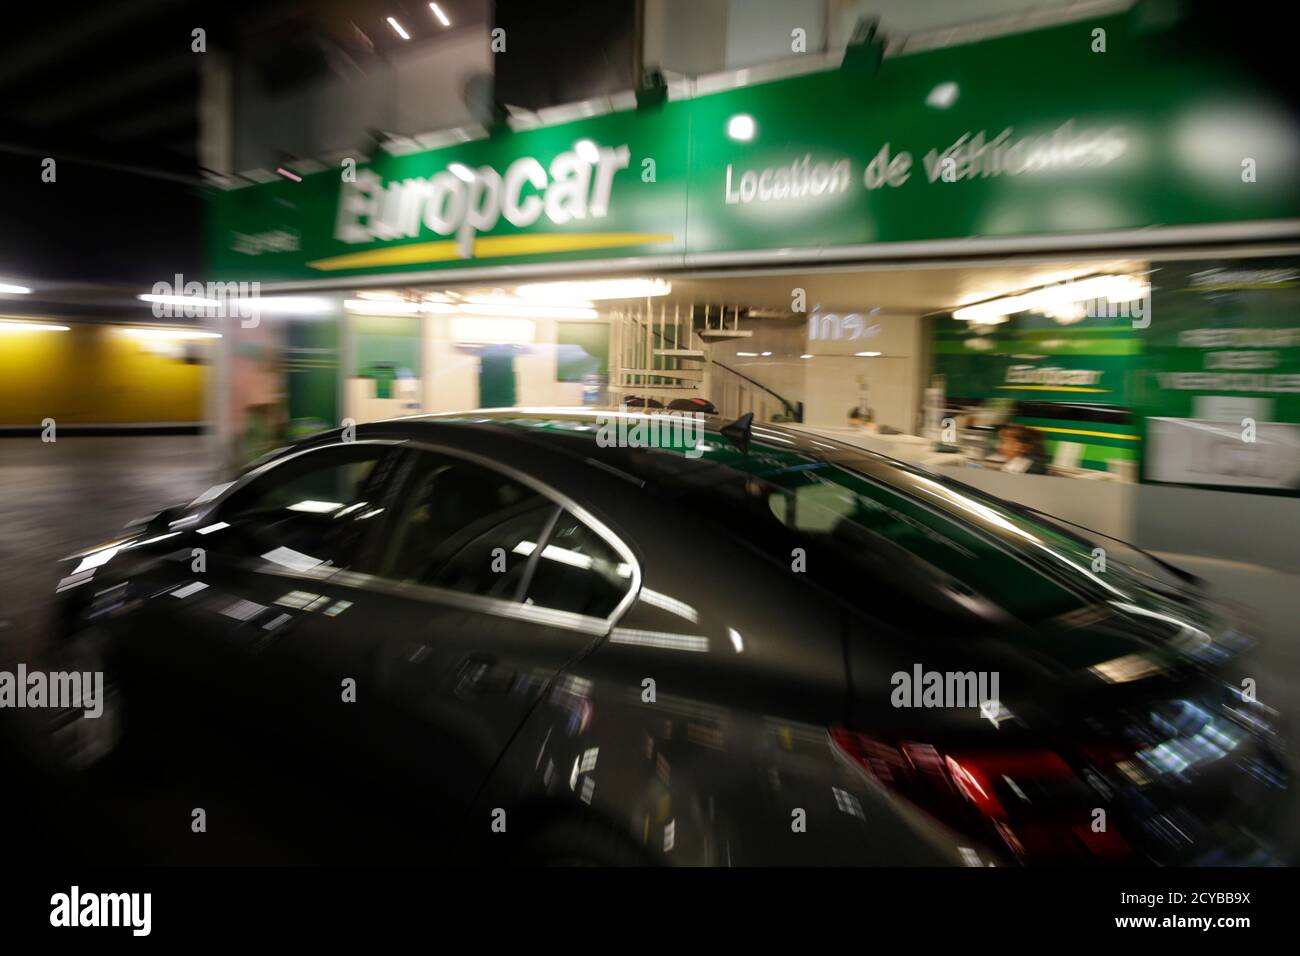 Un automóvil pasa por un punto de alquiler de coches Europcar en París, Francia, 15 de junio de 2015. Las ventas de acciones de la empresa francesa de alquiler de coches Europcar valorarán el grupo en hasta 2 mil millones de euros (2.2 mil millones de dólares) y los ingresos se utilizarán principalmente para reducir una carga de deuda que lo ha llevado a pérdidas en los últimos años. Europcar, que dice que es la empresa líder de alquiler de coches en Europa, espera recaudar al menos 854.5 millones de euros (957 millones de dólares) en la venta y se espera que las acciones comiencen a operar el 30 de junio. REUTERS/Philippe Wojazer Foto de stock